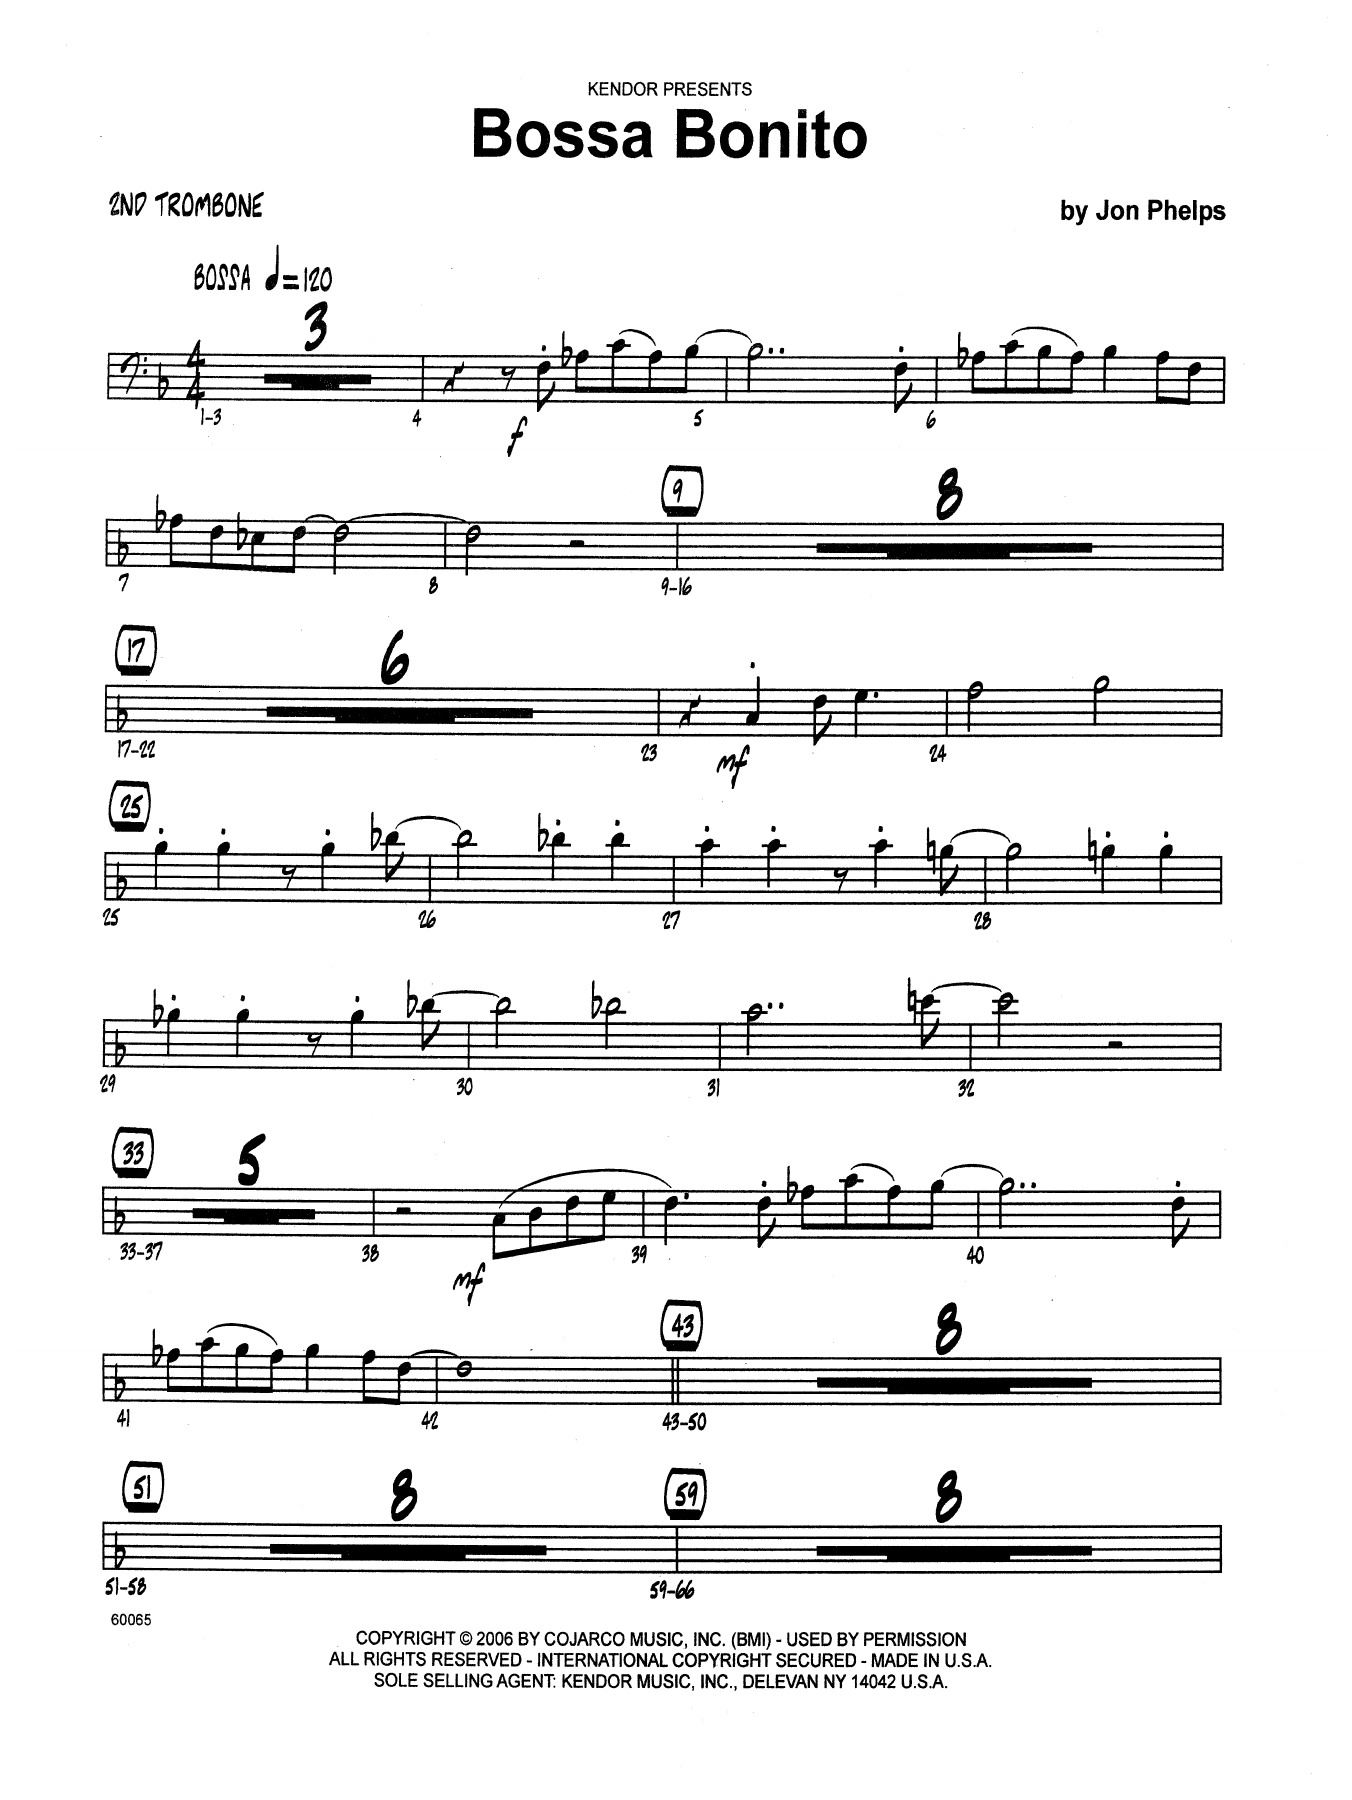 Download Jon Phelps Bossa Bonito - 2nd Trombone Sheet Music